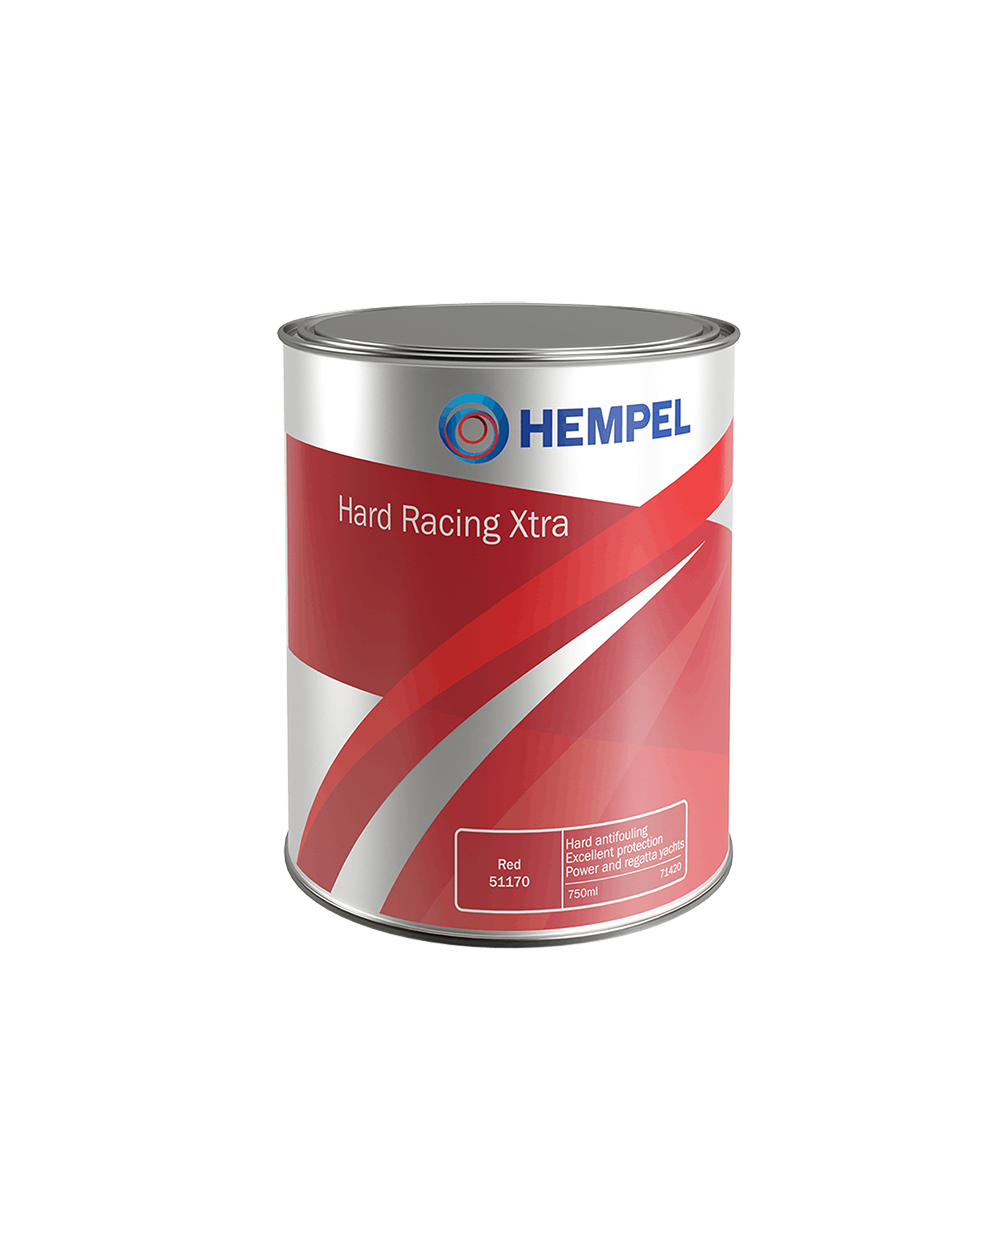 Se Hempel Hard Racing Xtra 2,5 L 56460 Red hos Picment.dk